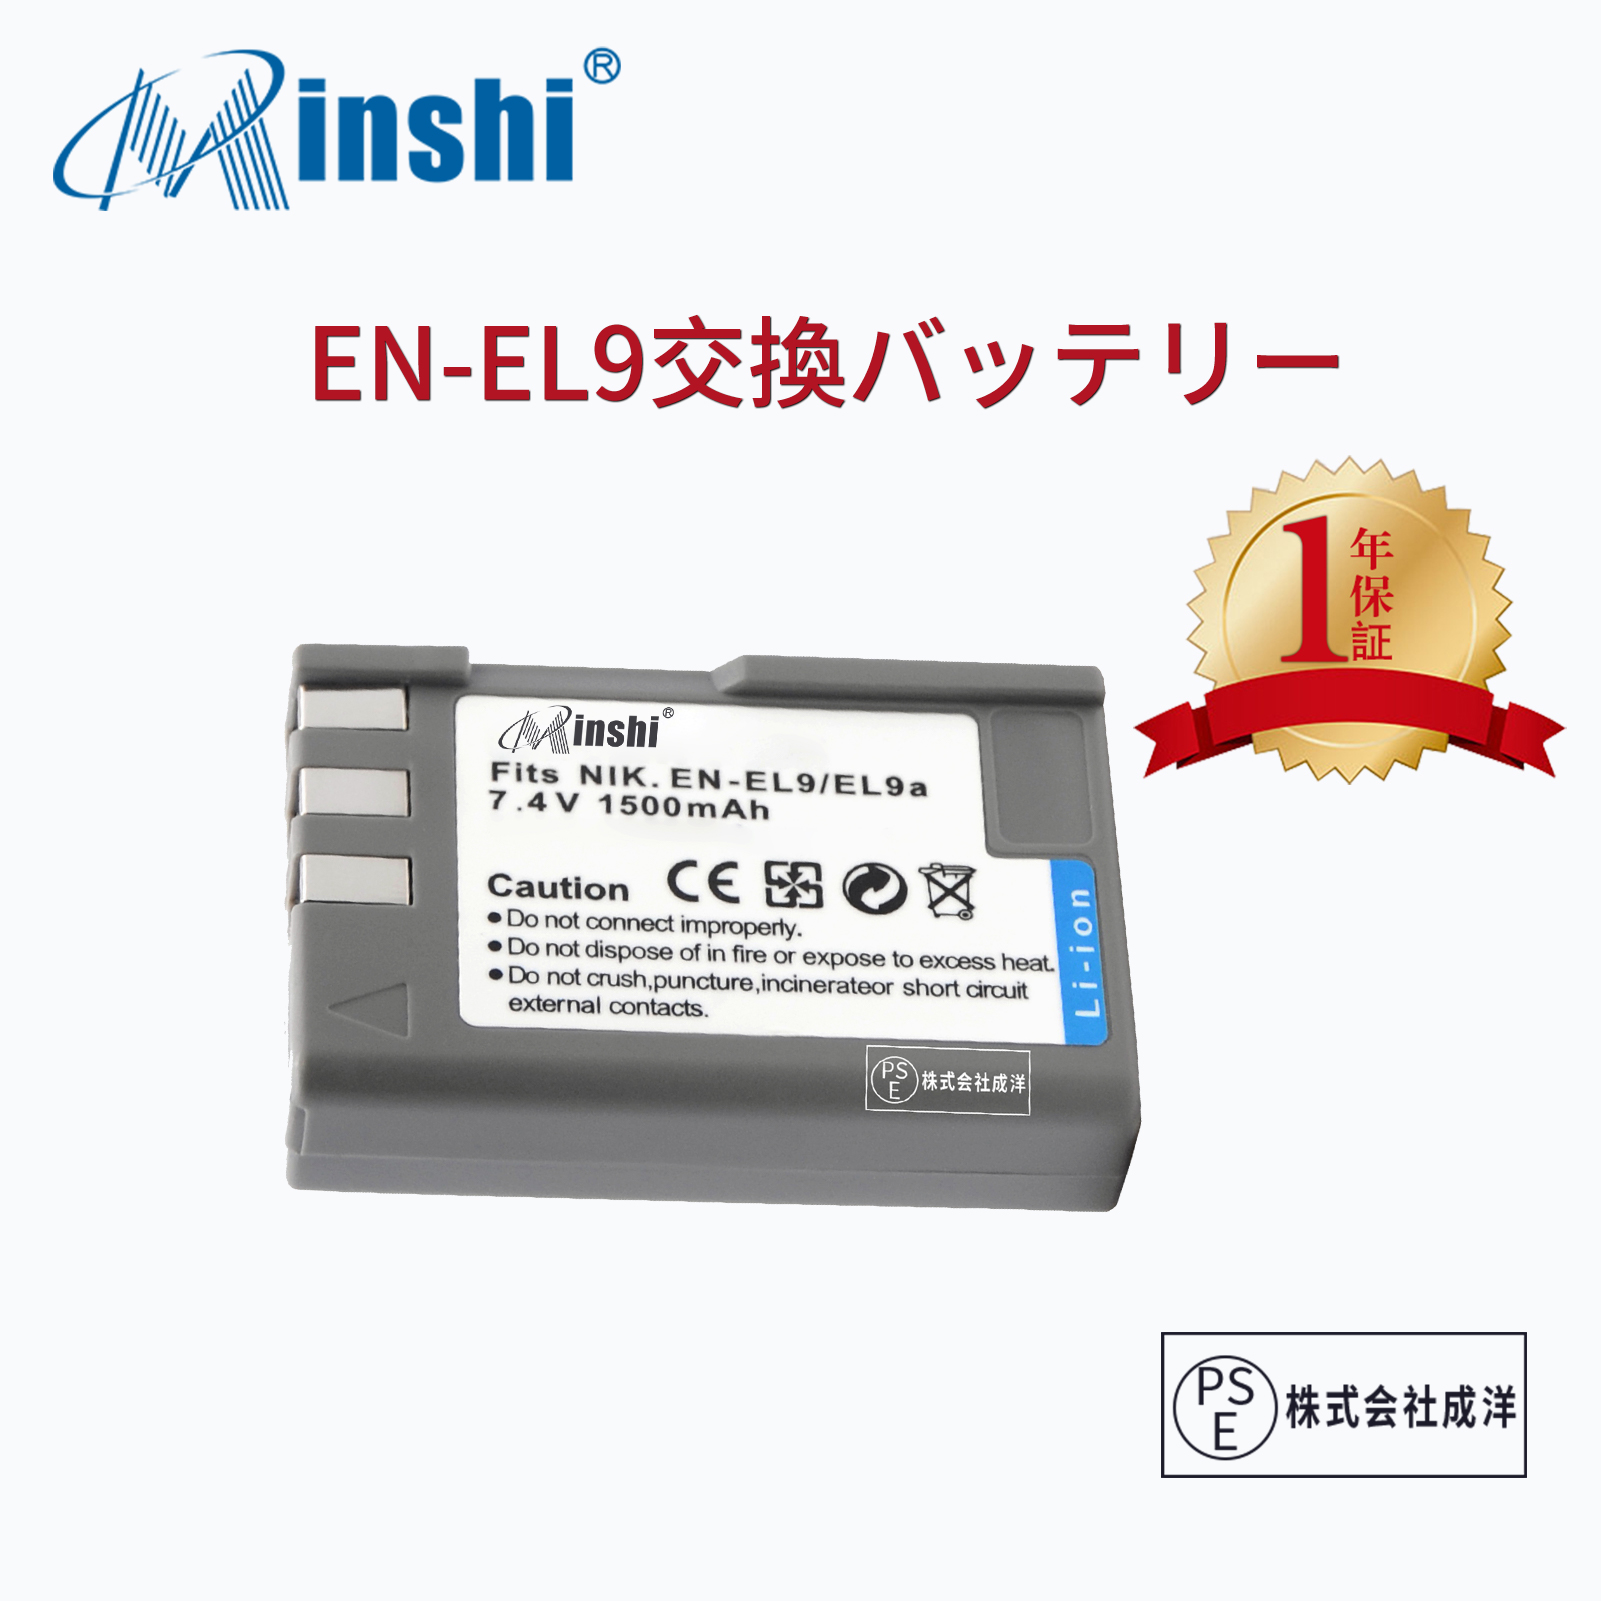 【1年保証】minshi NIKON EN-EL9a EN-EL9 【1500mAh 7.4V】 D40 D60 D3000 D5000PSE認定済 高品質EN-EL9 EN-EL9a EN-EL9e交換用バッテリー